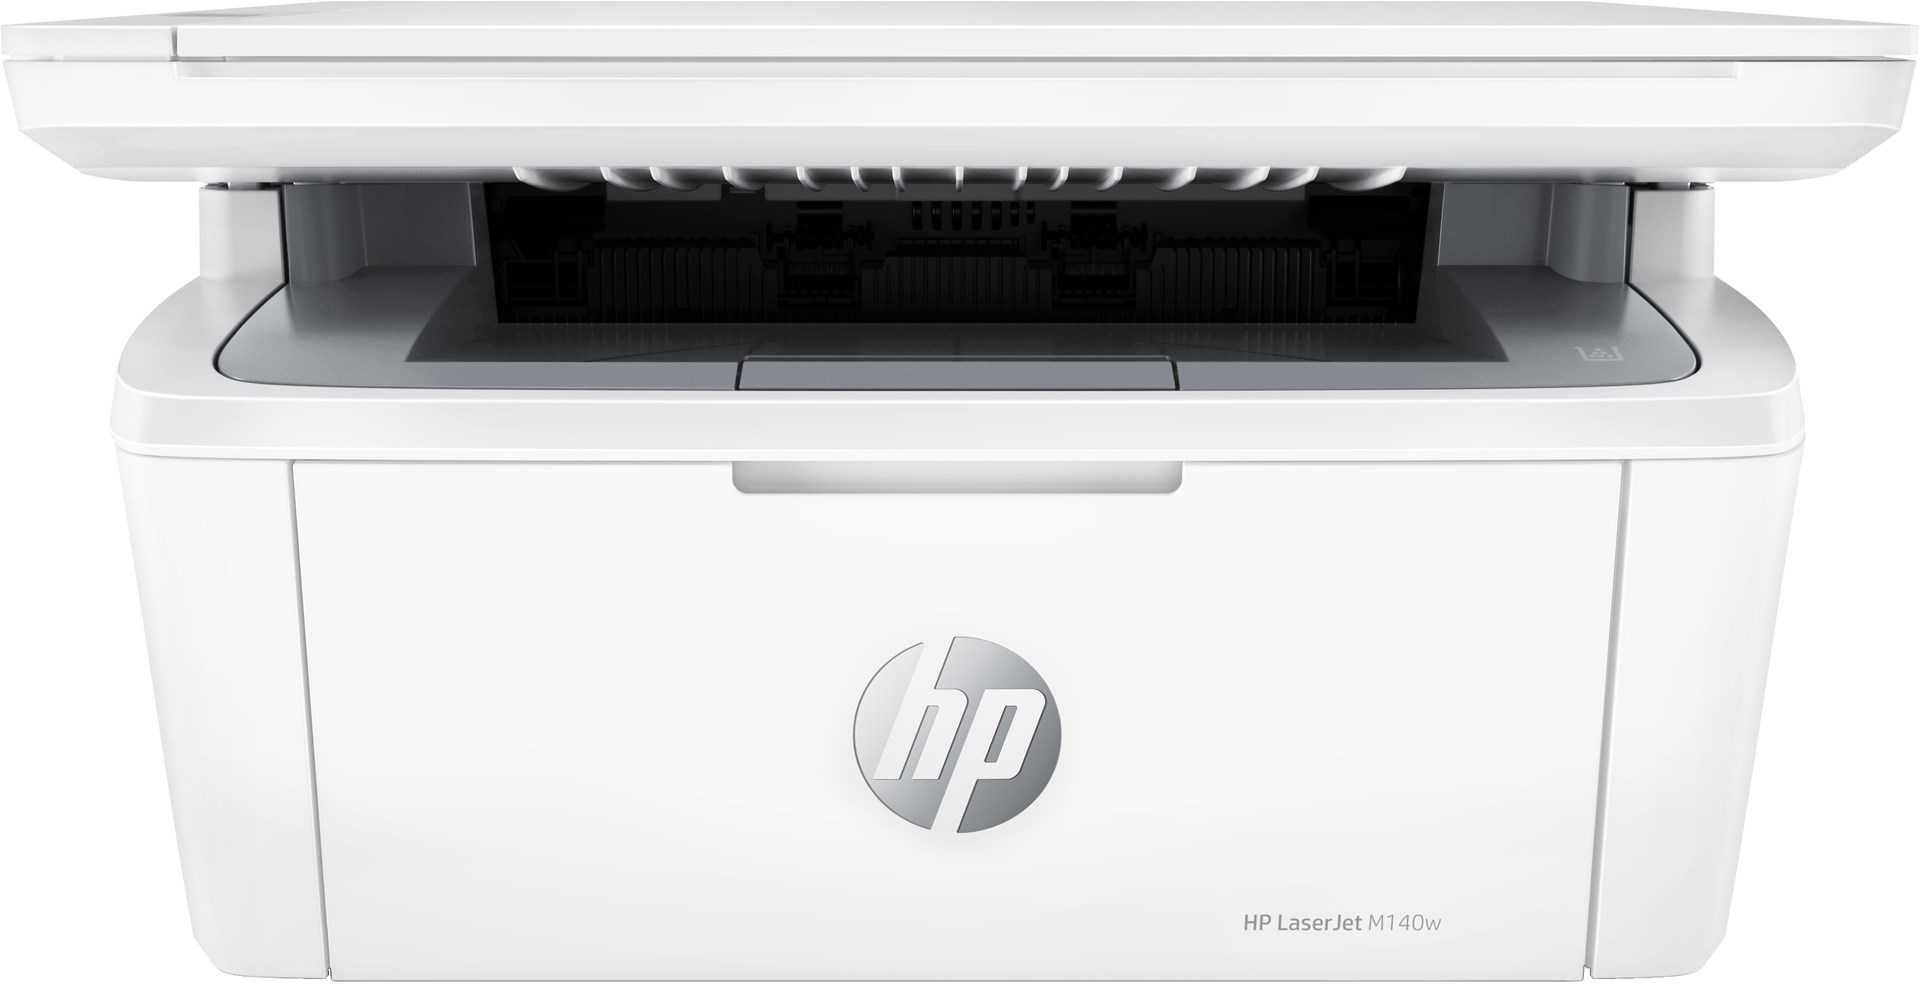 HP LaserJet Tiskárna MFP M140w, Černobílé zpracování, Tiskárna pro Malá kancelář, Tisk, kopírování, skenování, Skenování do e-mailu; Skenování do PDF; Kompaktní velikost